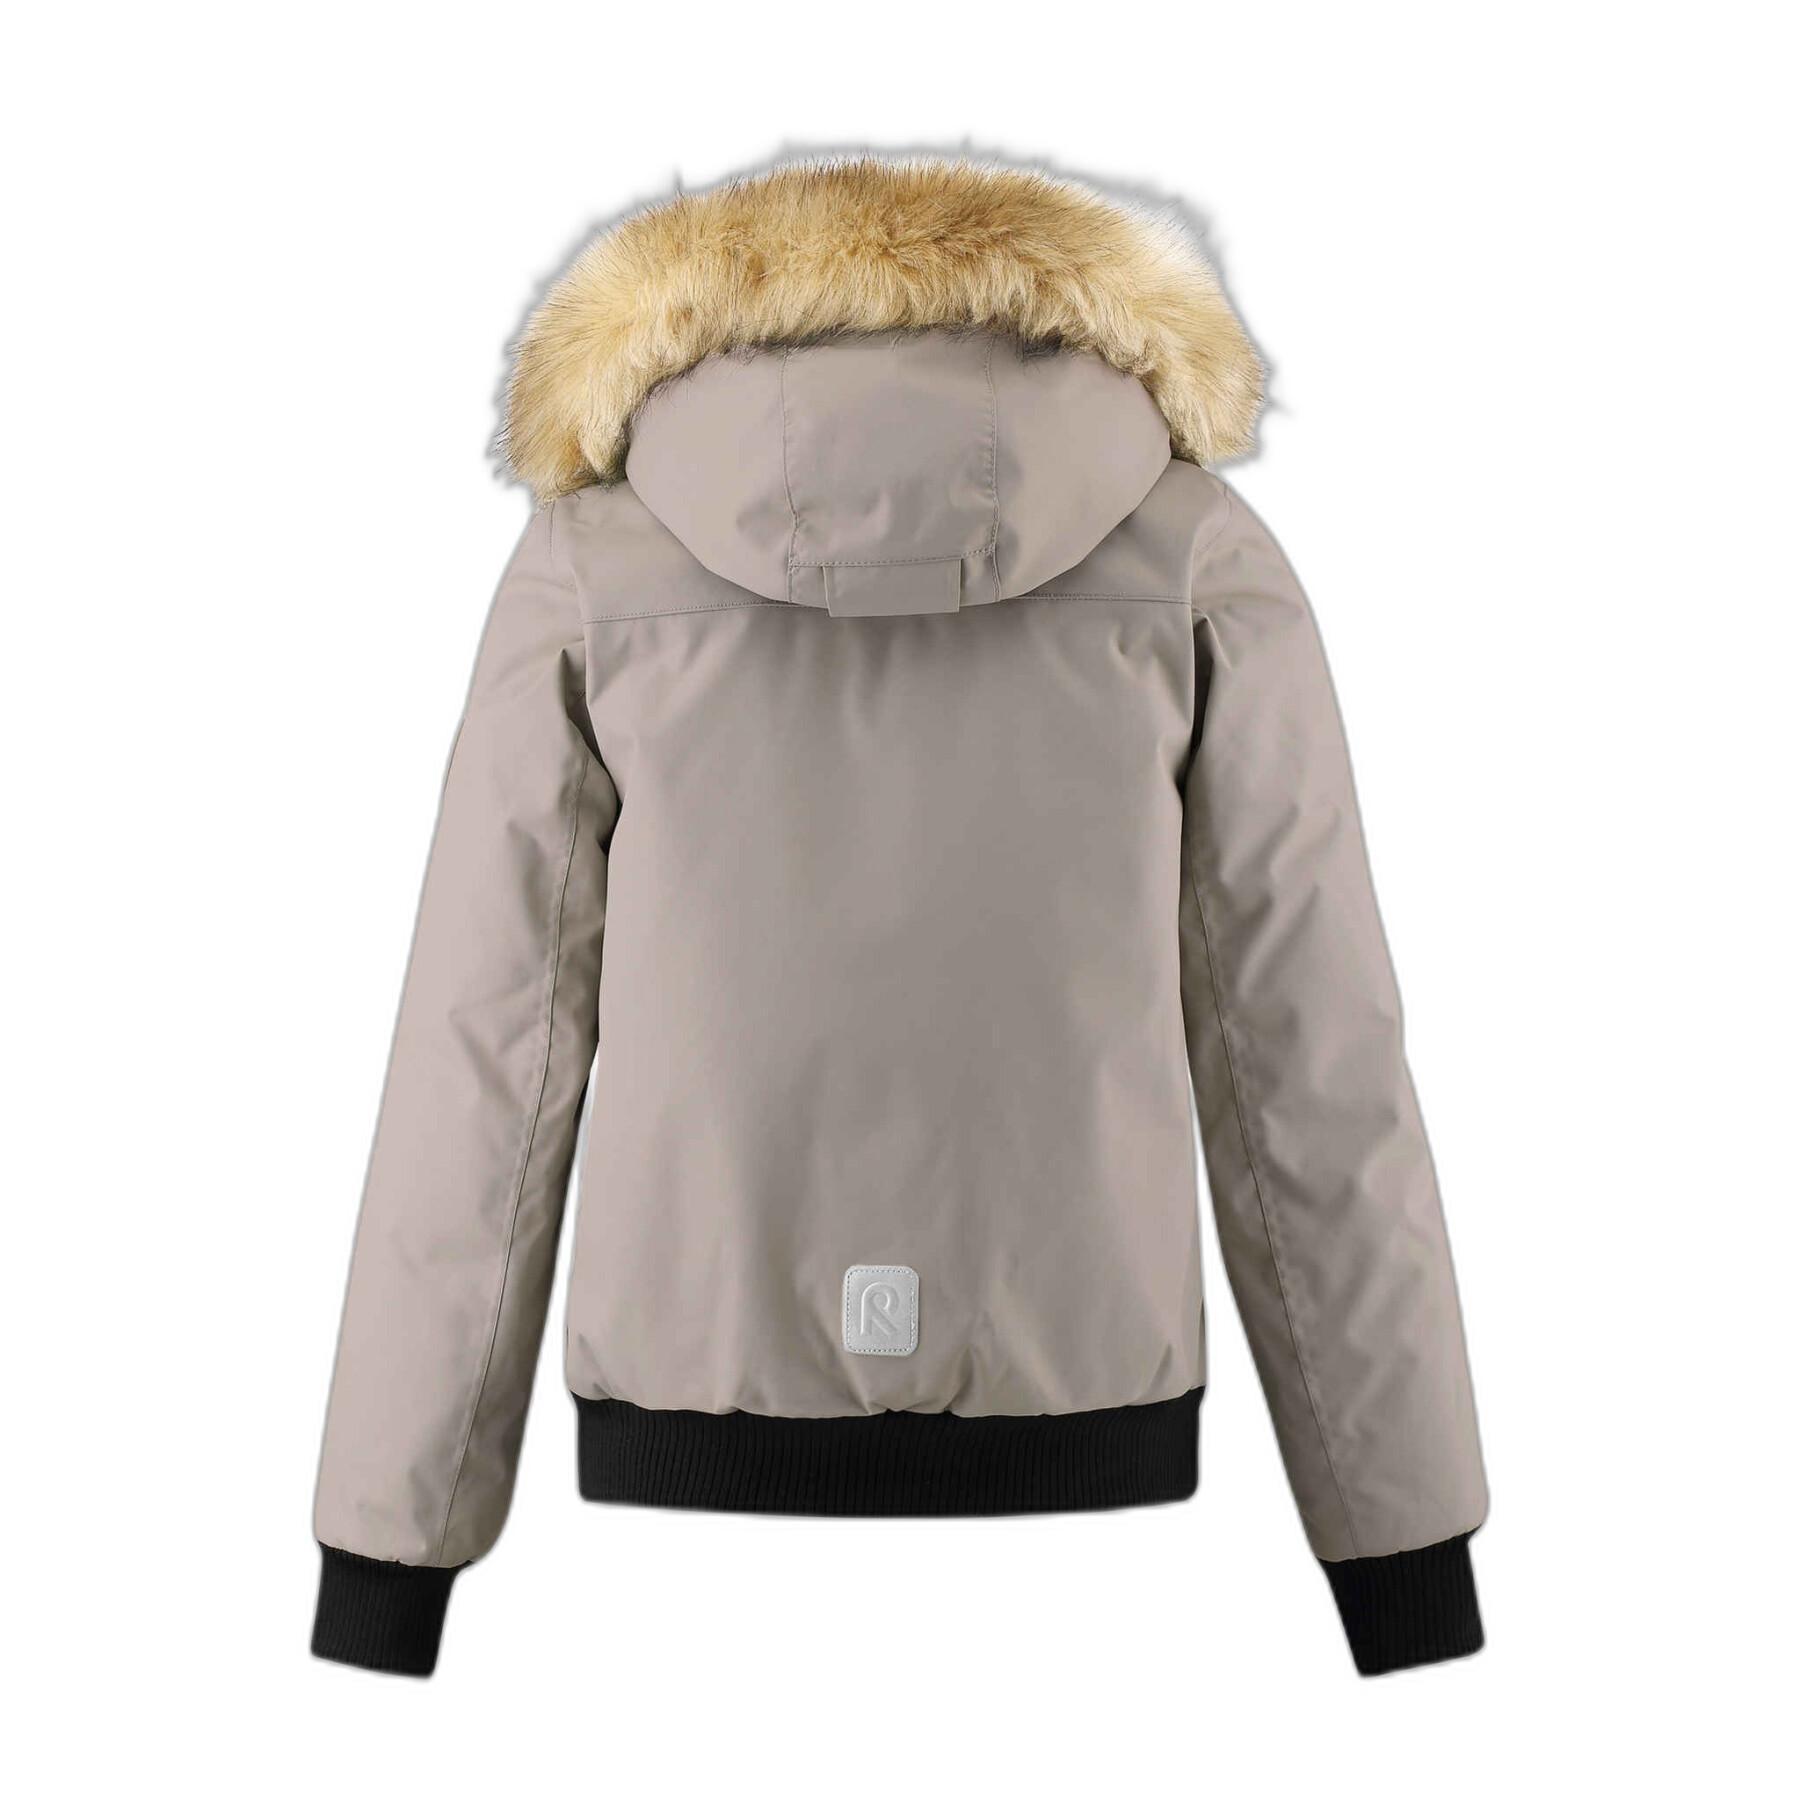 Waterproof winter jacket for children Reima Reima tec Ore